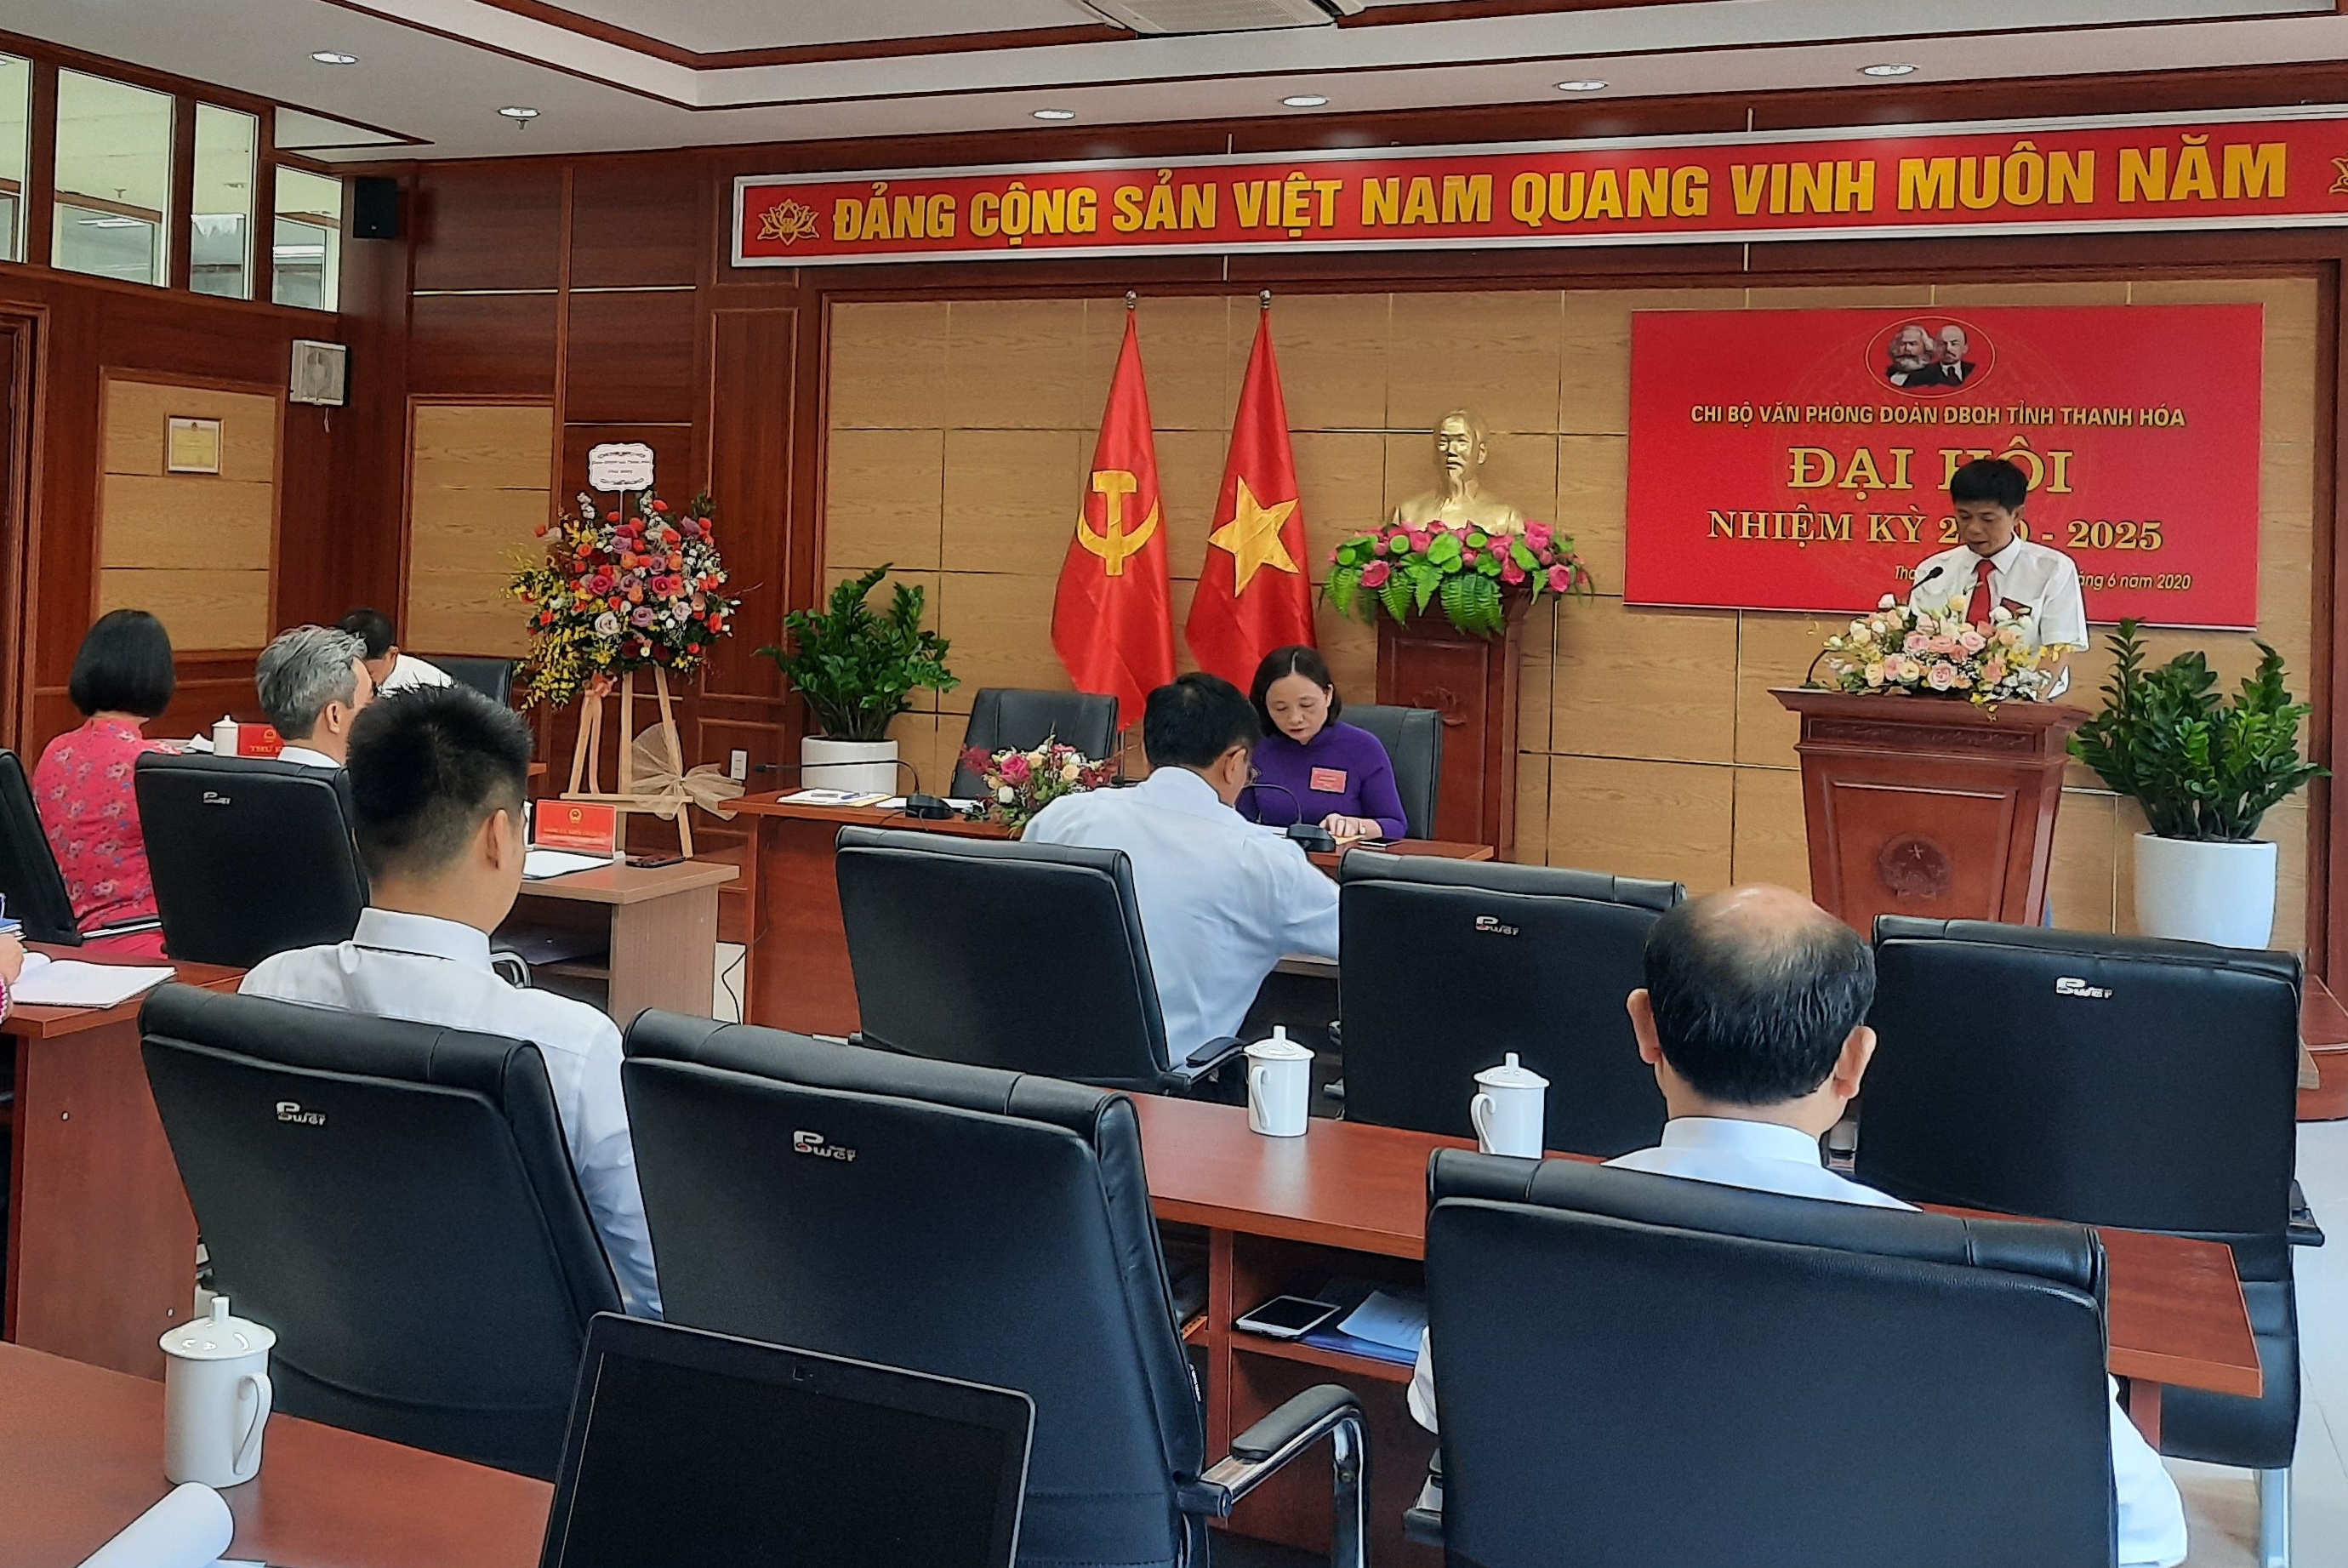 Đại hội Chi bộ Văn phòng Đoàn ĐBQH tỉnh Thanh Hóa, nhiệm kỳ 2020-2025